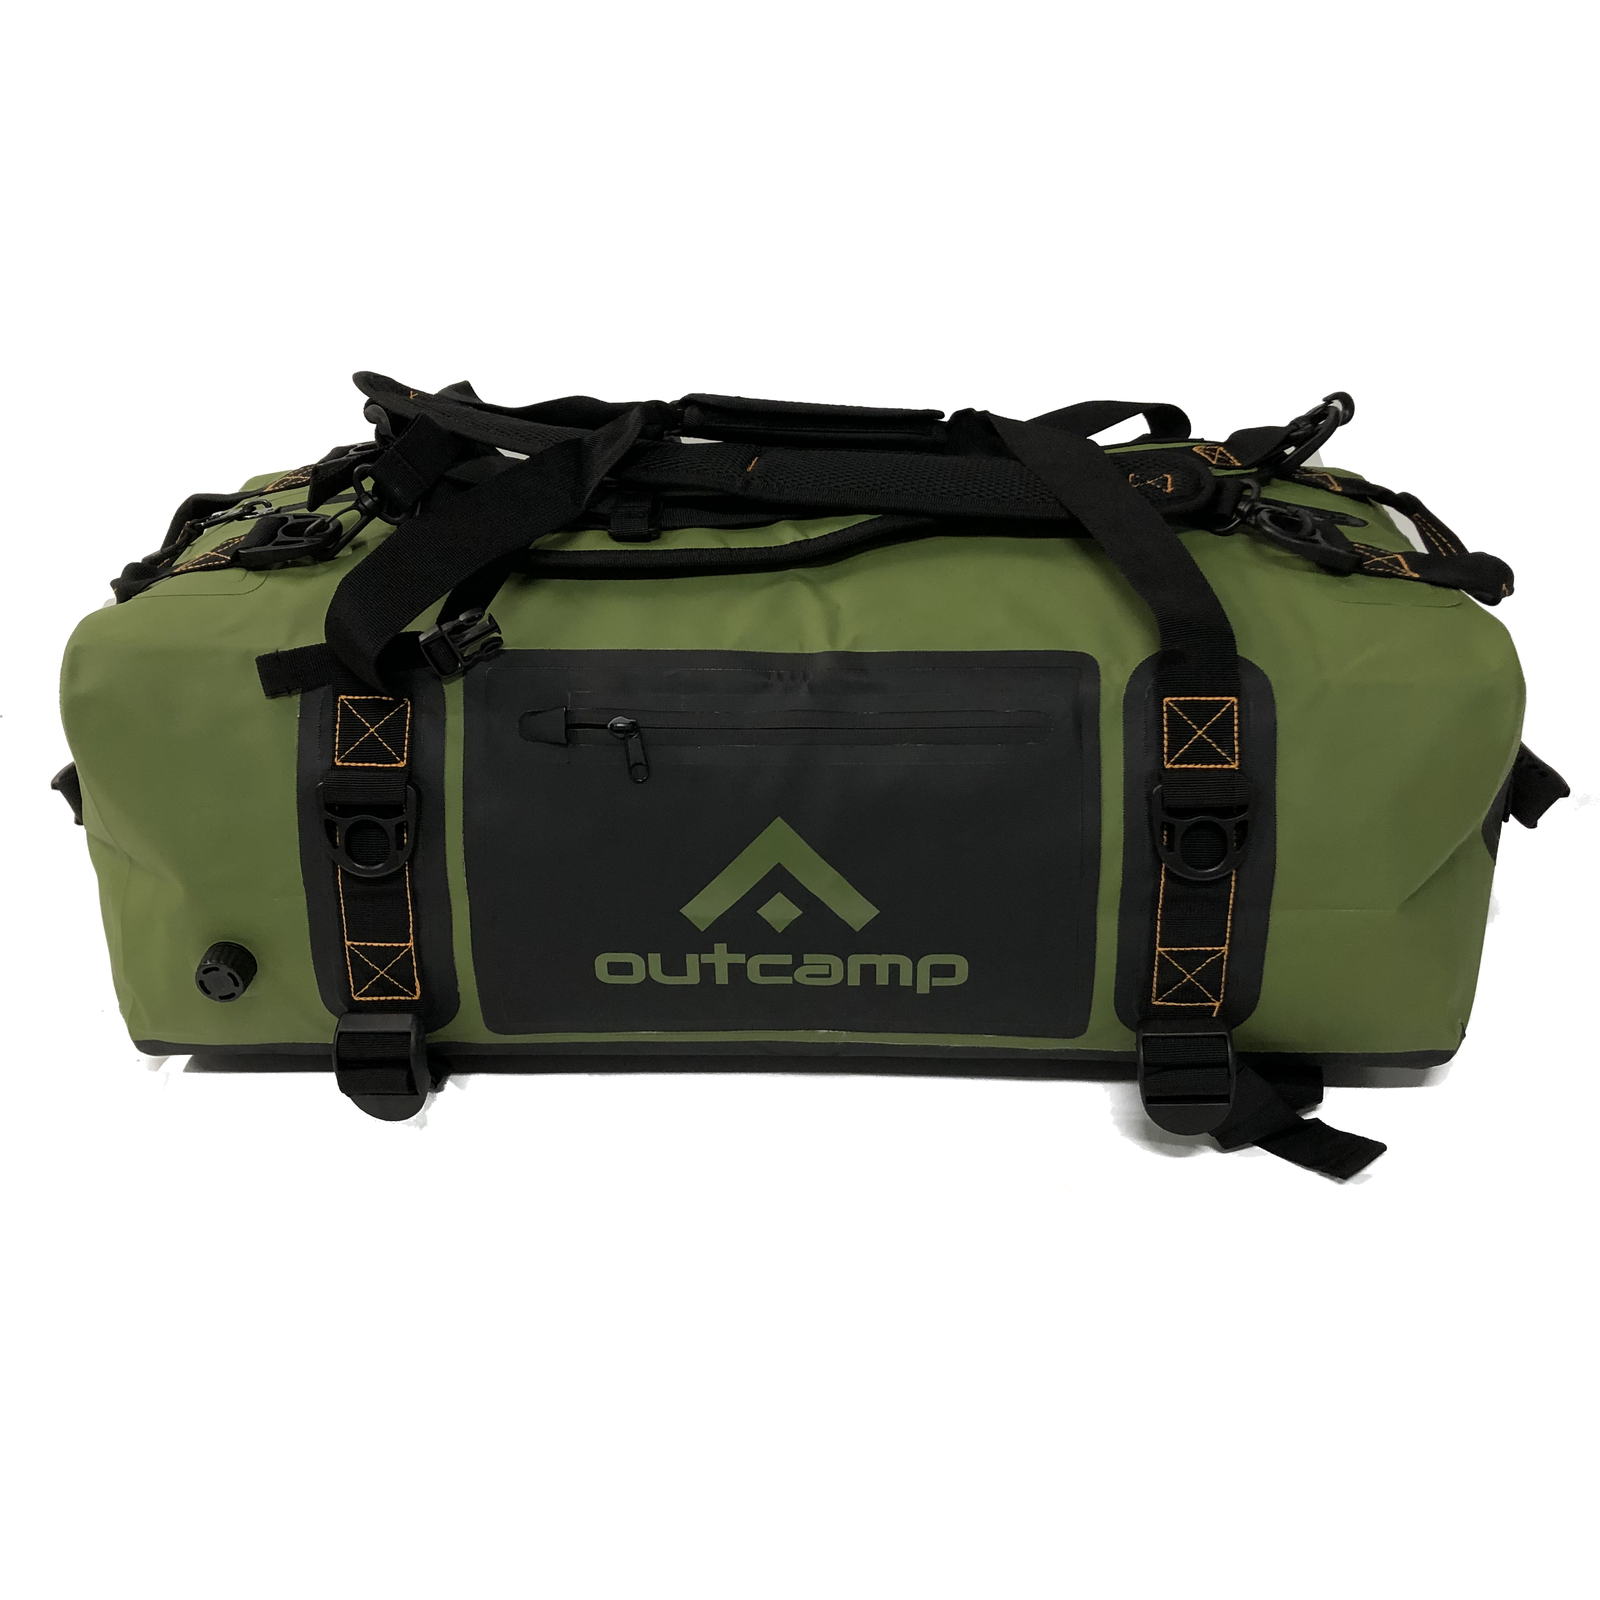 Waterproof Gear Bags - Versatile Duffle Bag / Backpack